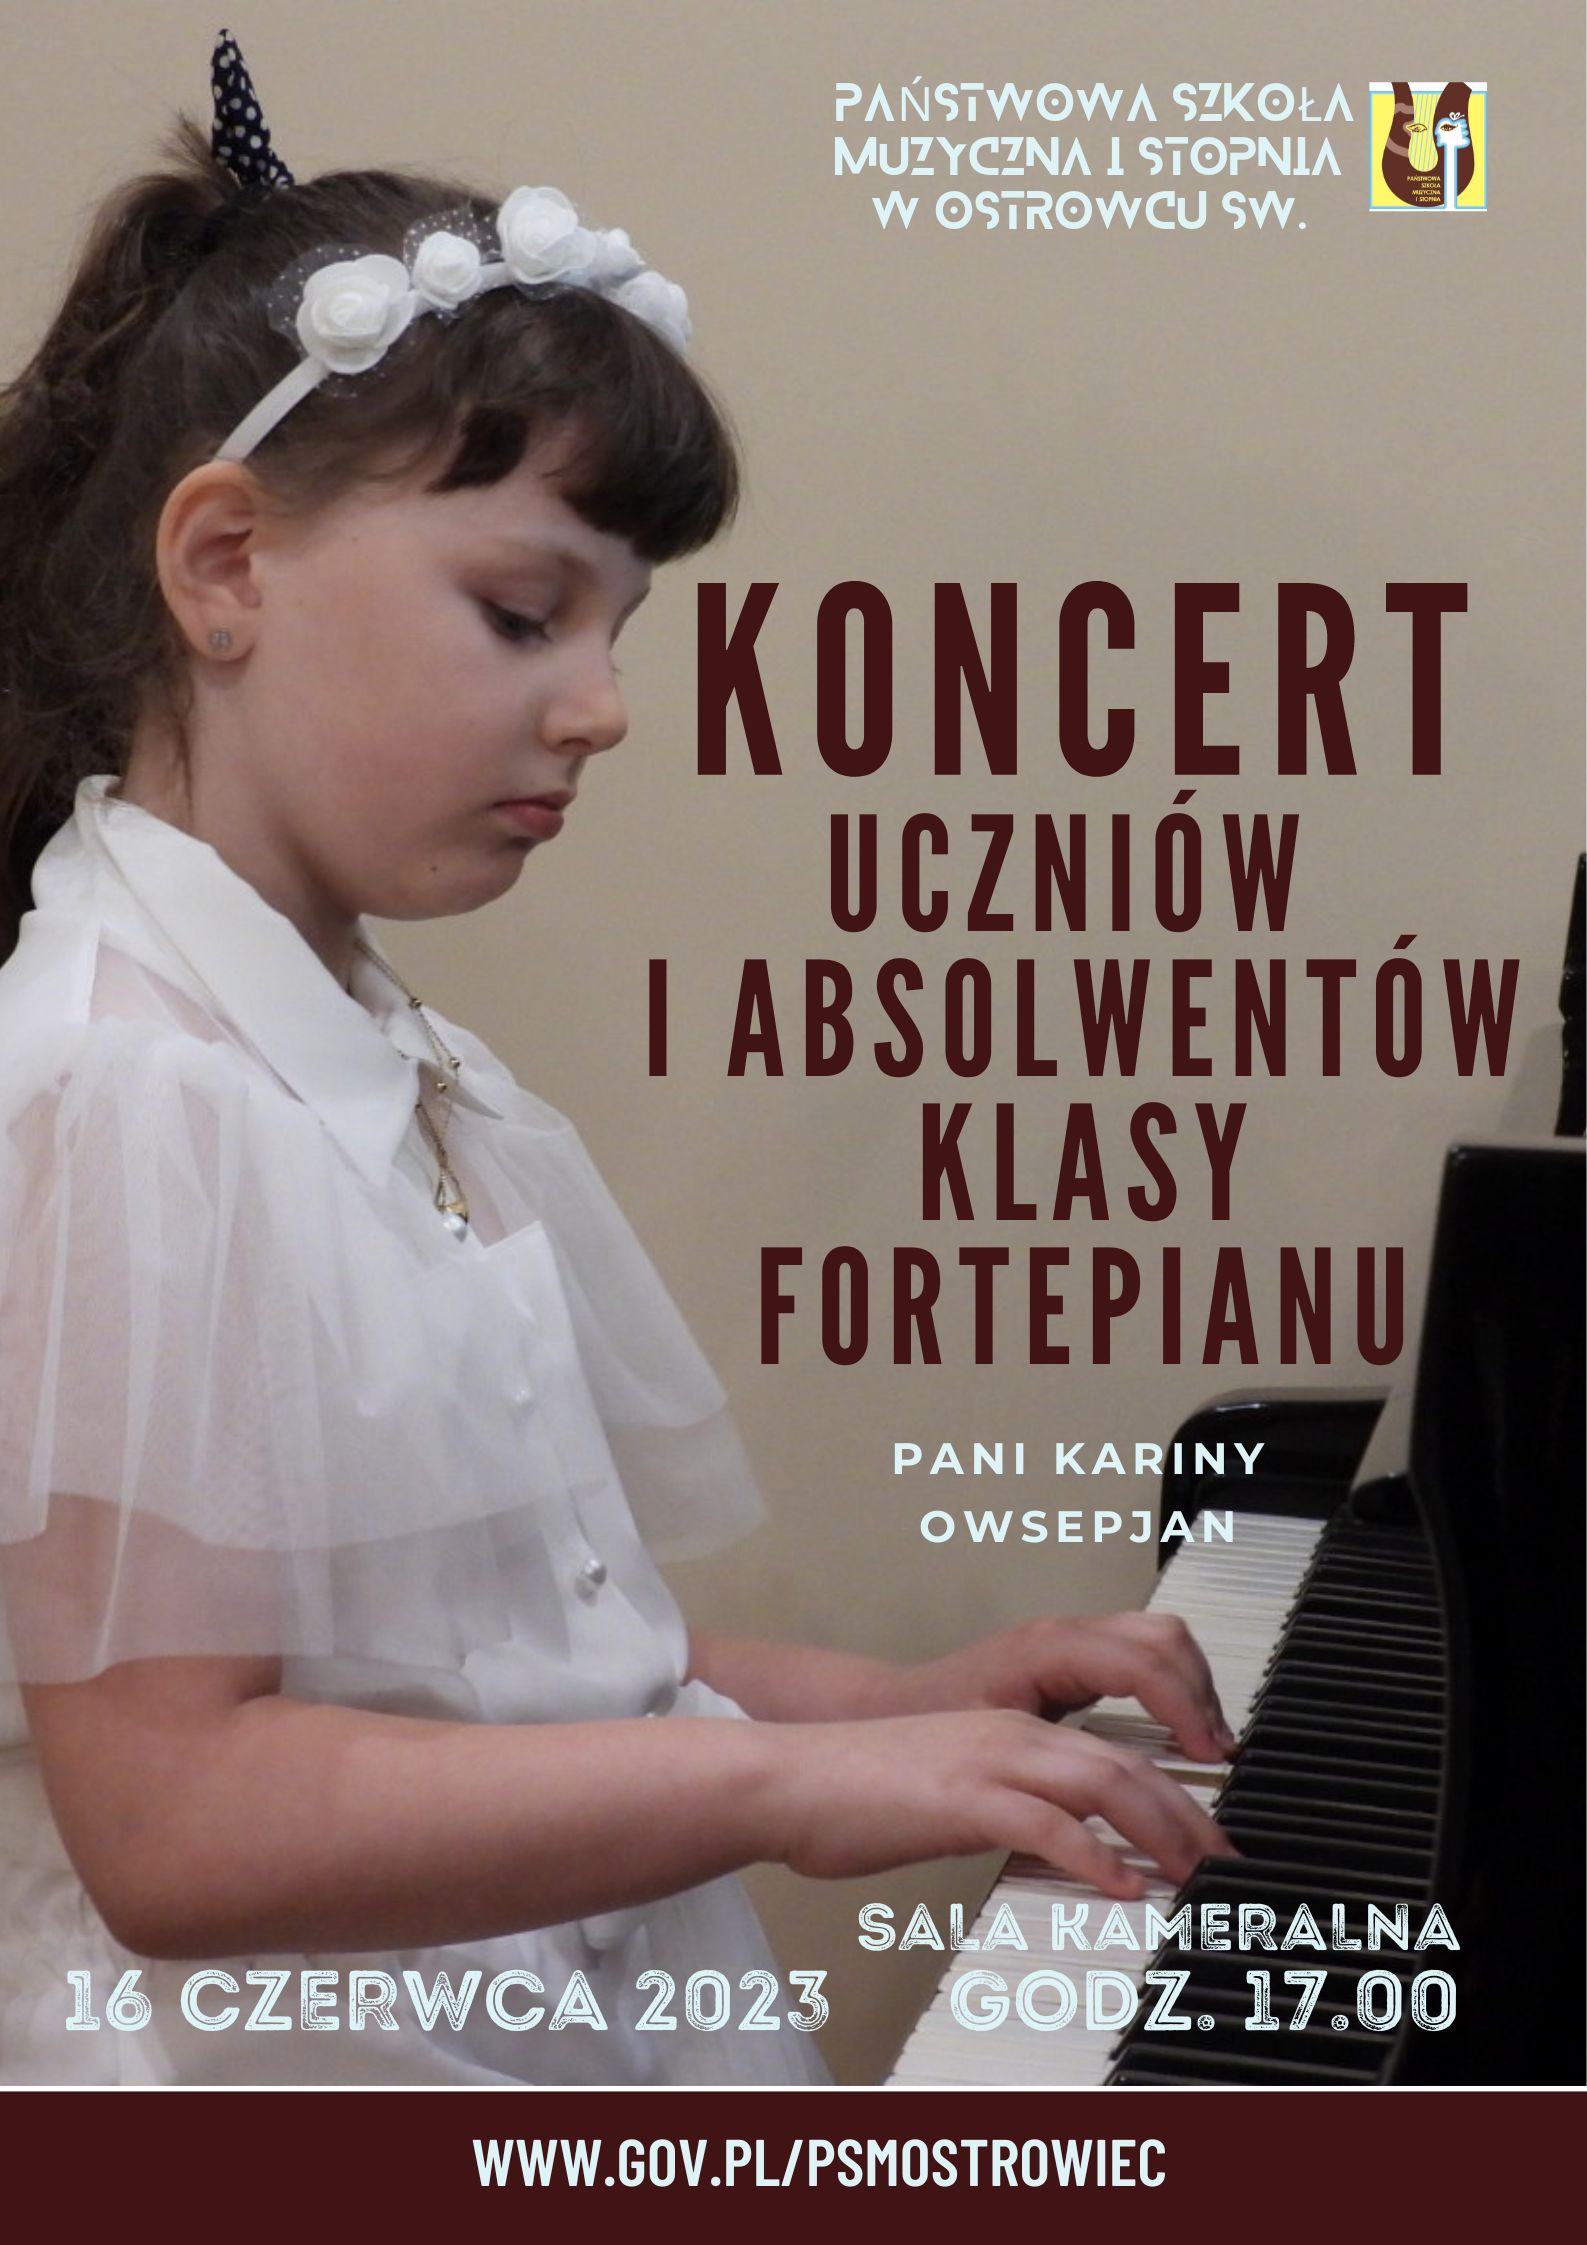 Koncert uczniów i absolwentów klasy fortepianu p. Kariny Owsepjan